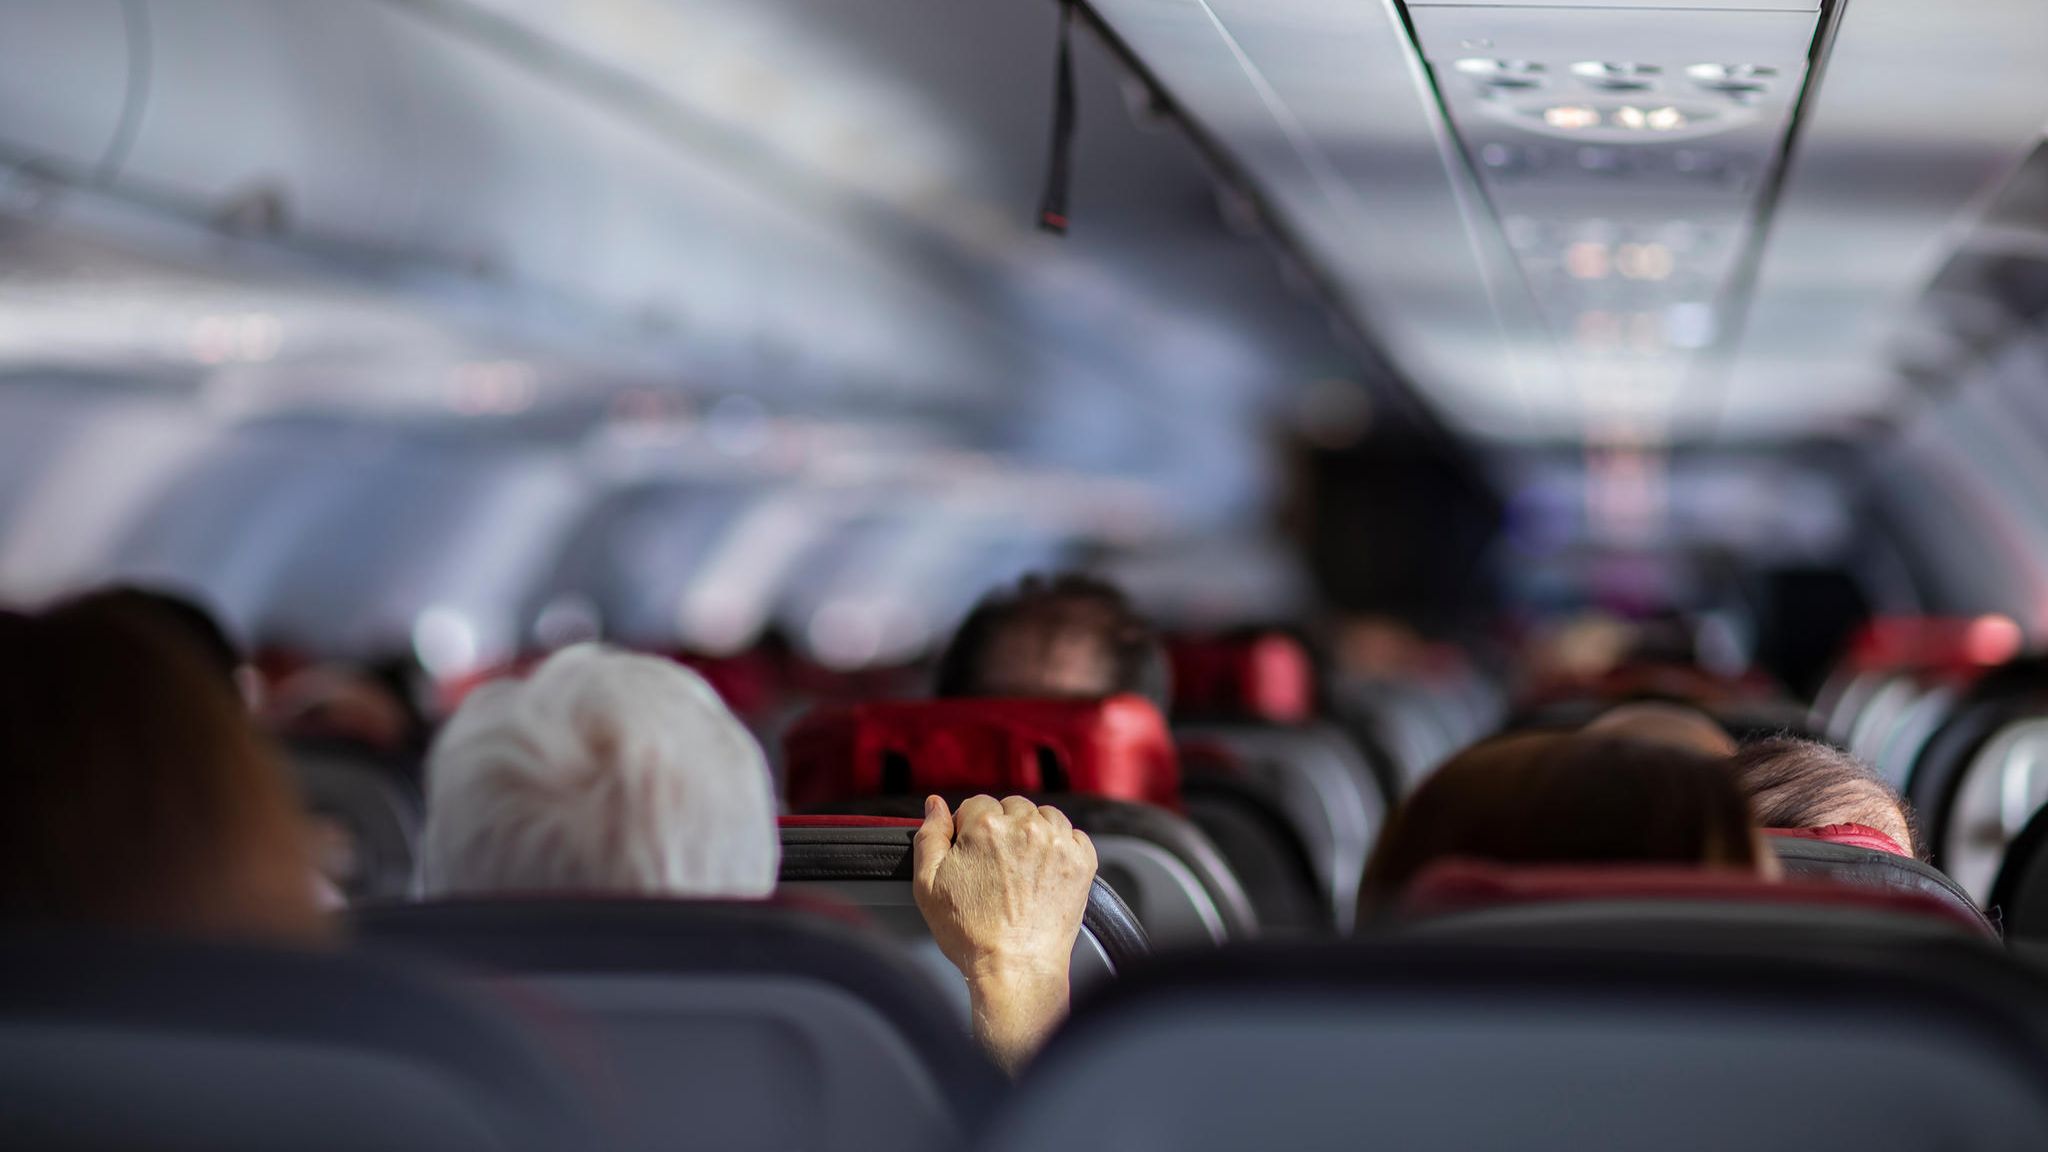 Fluggast verschickt Sex-Bilder an Passagiere und wird festgenommen STERN.de Bild